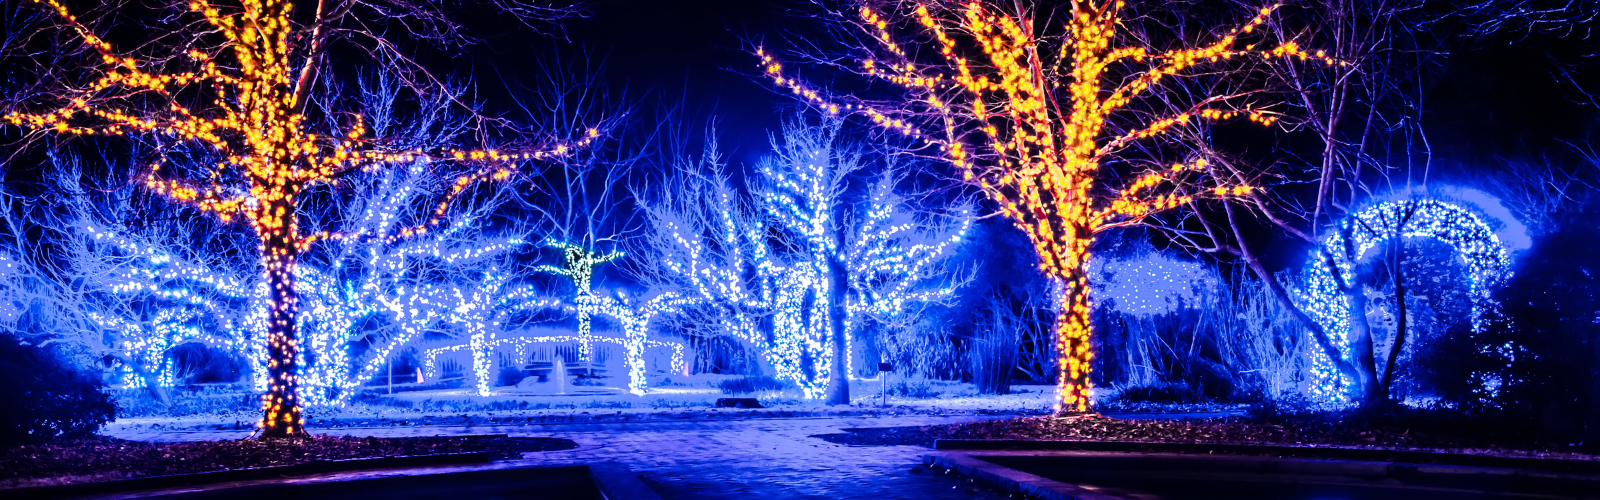 holiday Christmas lights, led outdoor display